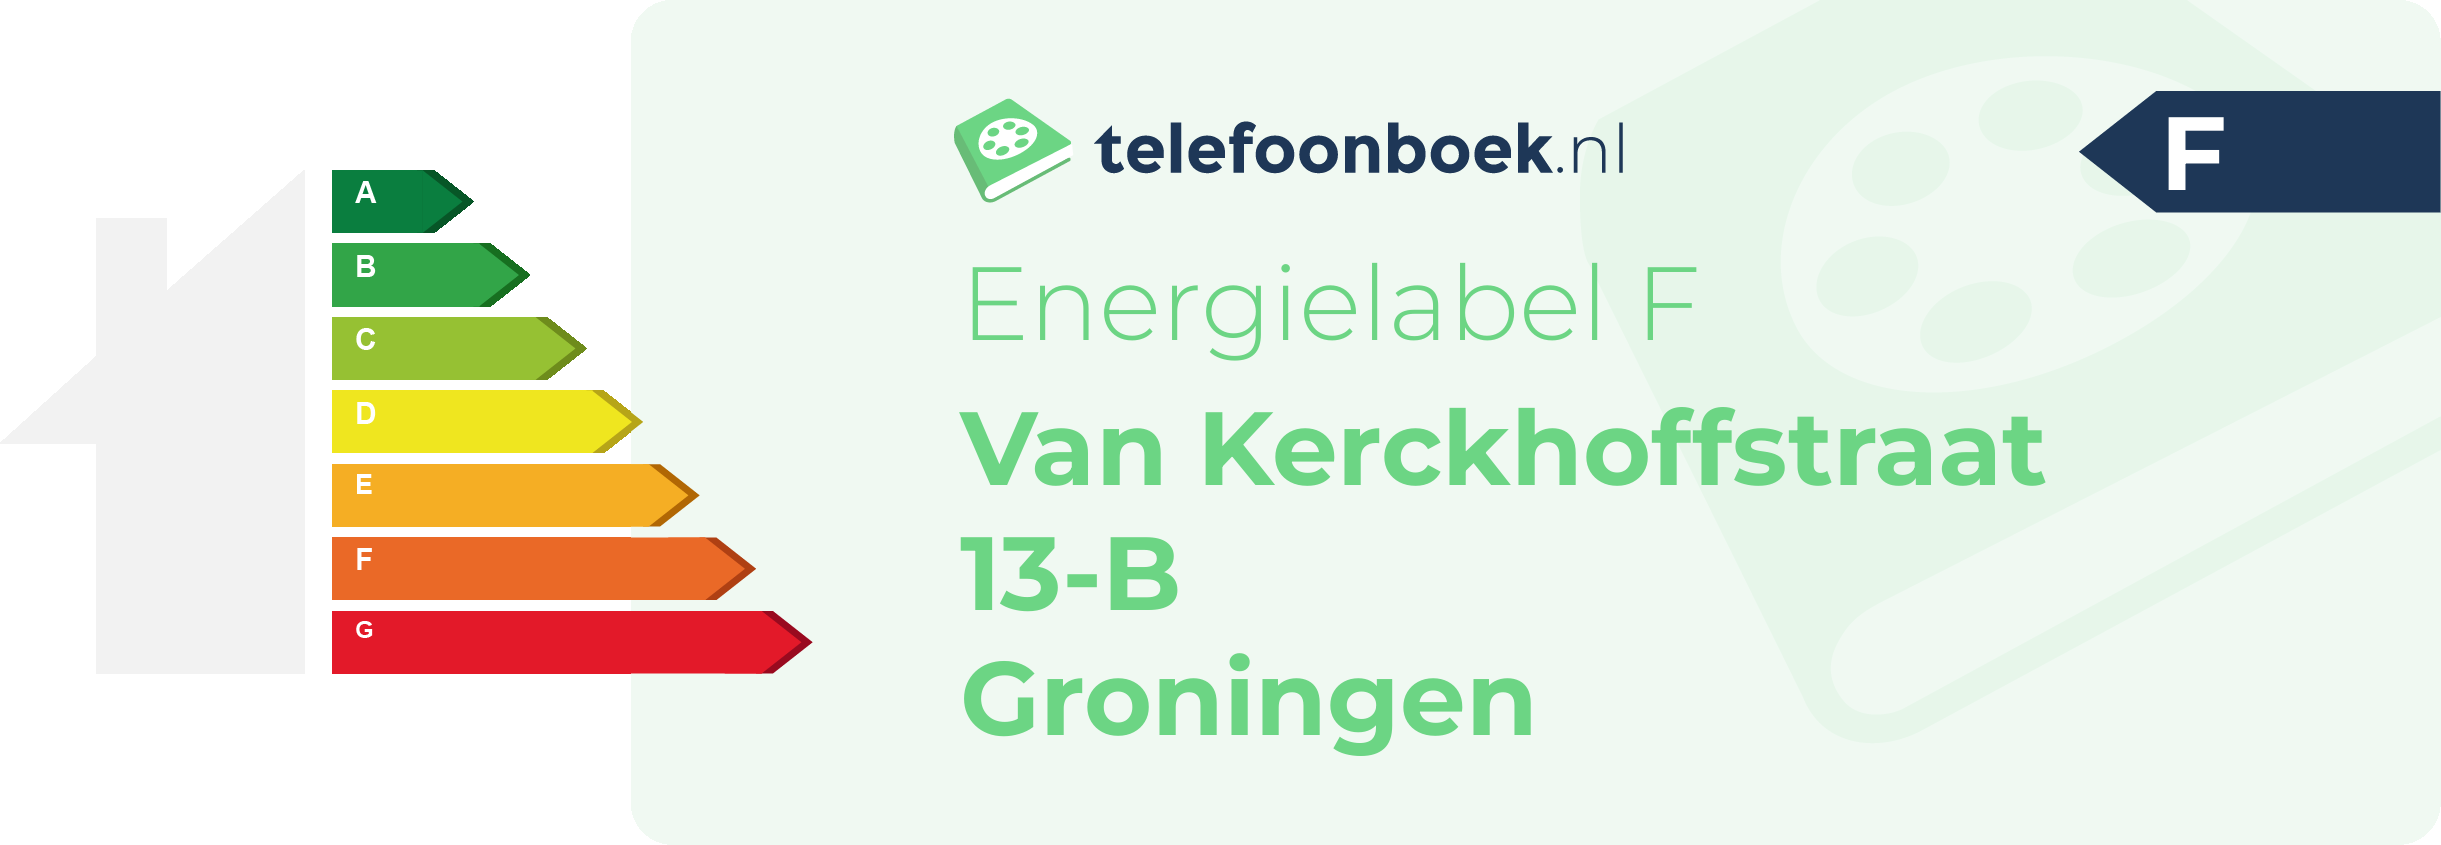 Energielabel Van Kerckhoffstraat 13-B Groningen